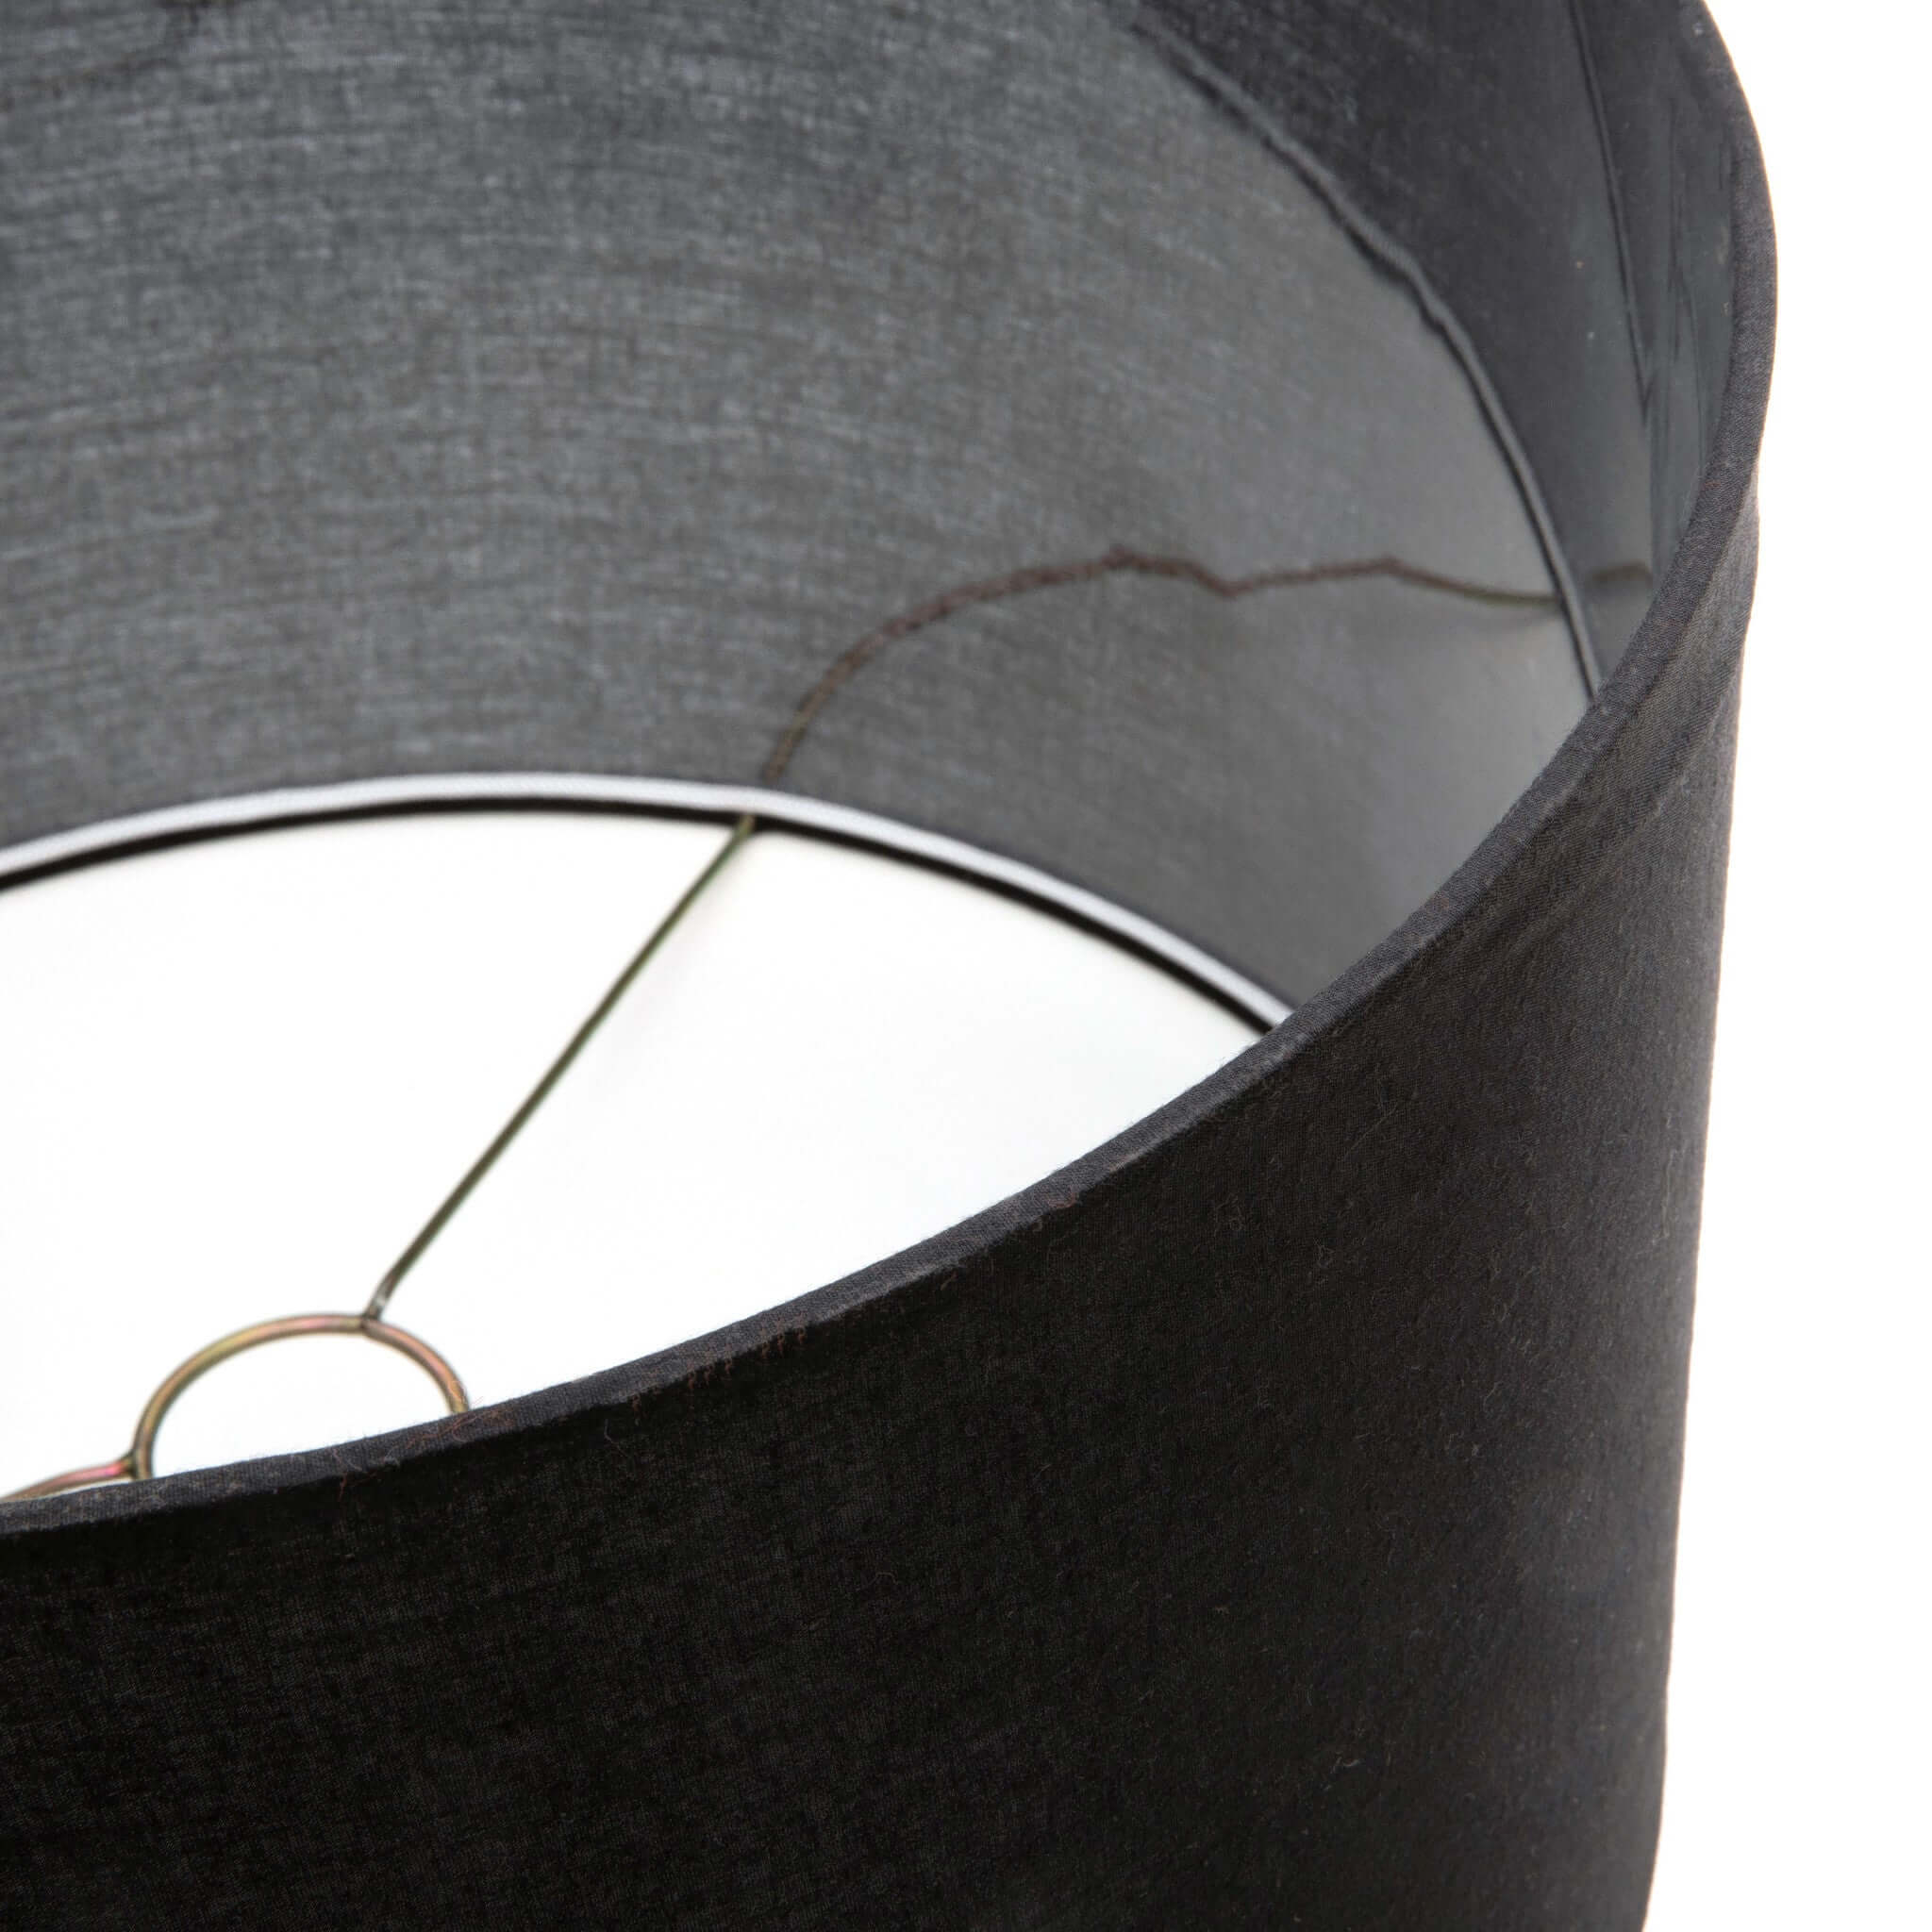 Tafellamp Teak Wood zwart Bazar Bizar Laat u inspireren door onze prachtige teakhouten tafellamp met zwarte stoffen kap die 100% sfeer creëert met zijn mooie kustlook. Het geeft een gezellig licht aan uw woonkamer, loungeruimte of slaapkamer.Elektrische k